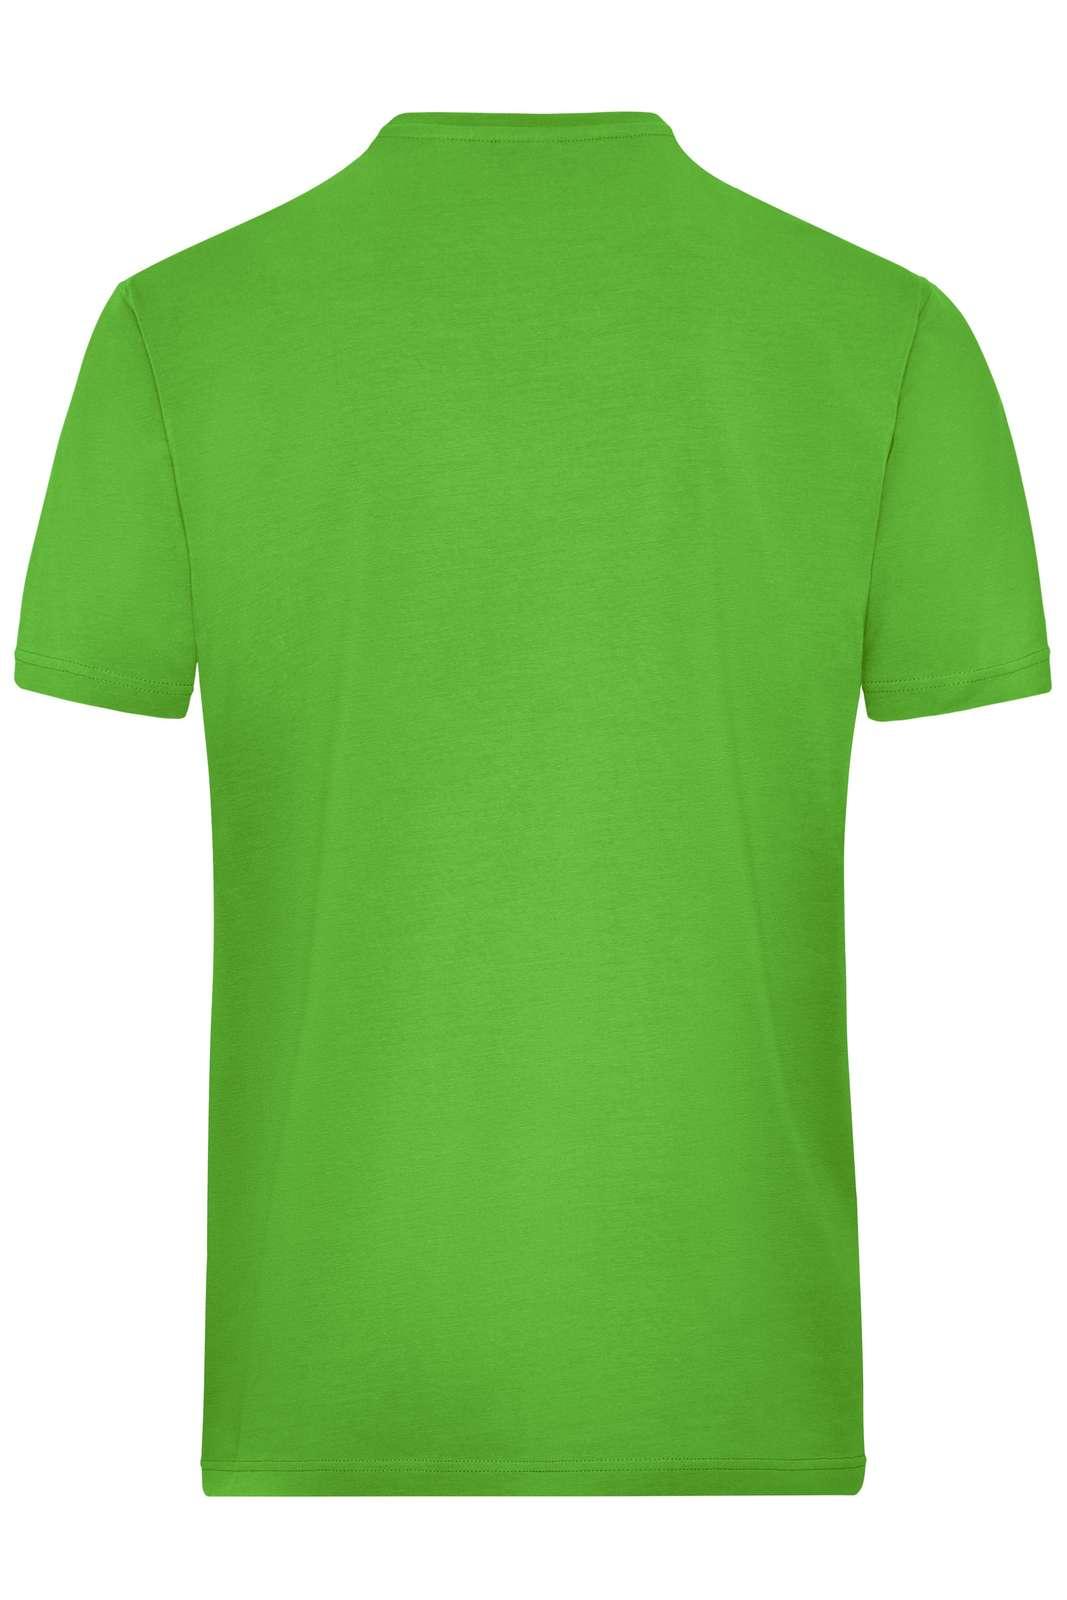 JN BIO STRETCH T-SHIRTS - Arbejds T-shirt - JA Profil 